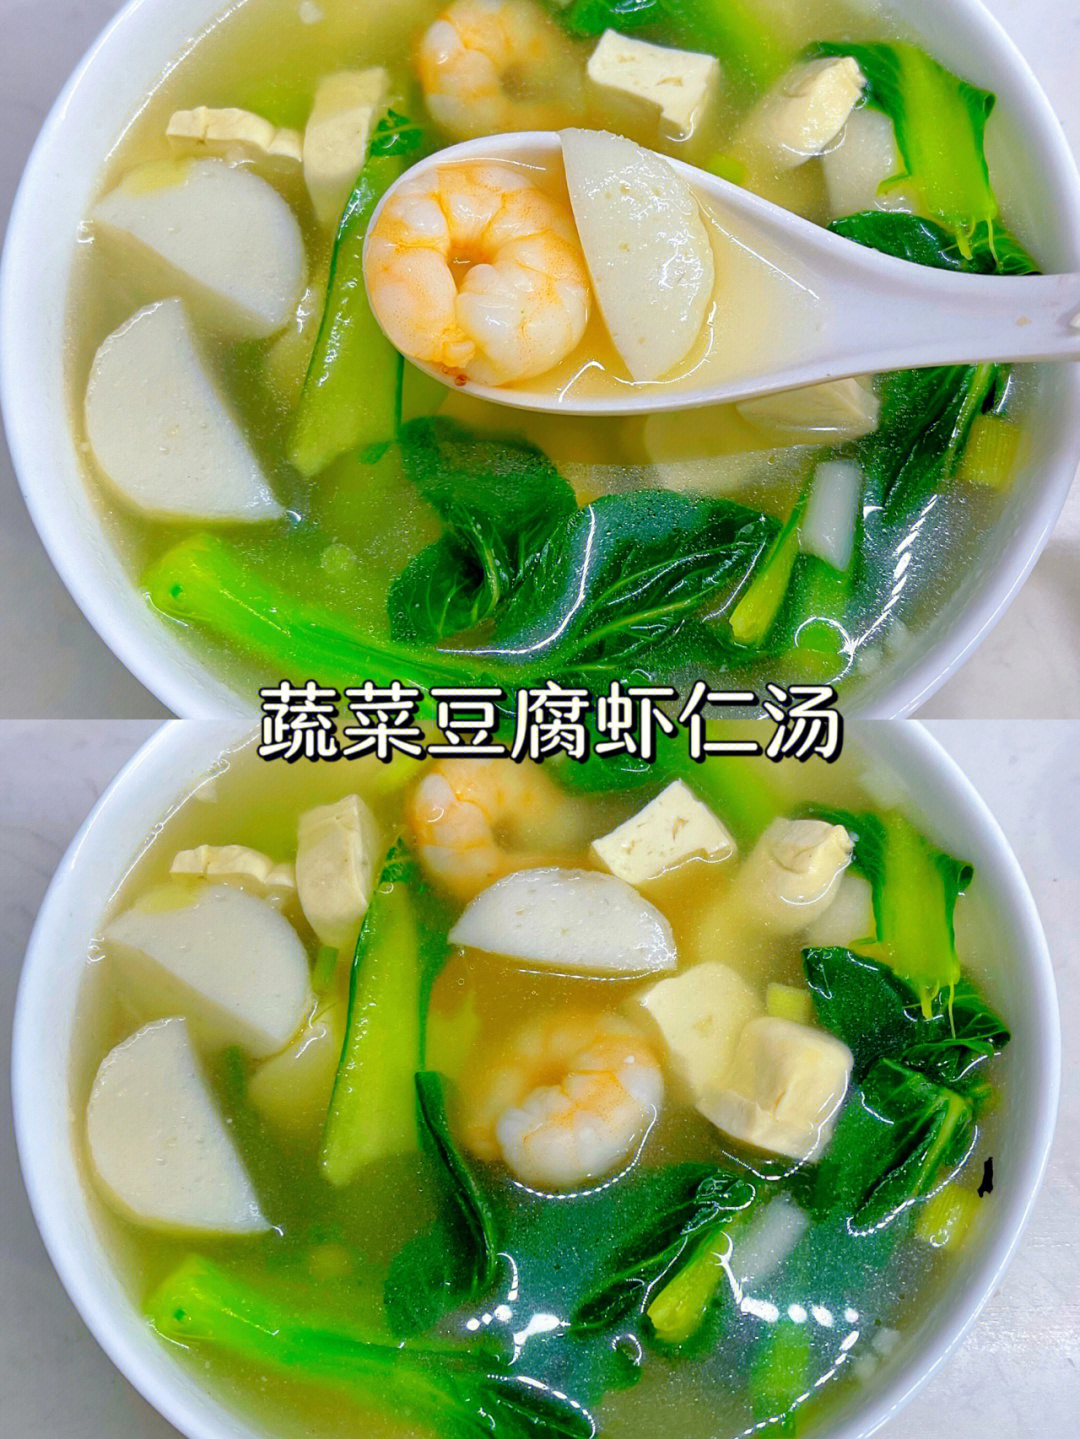 虾仁豆腐汤的做法图片